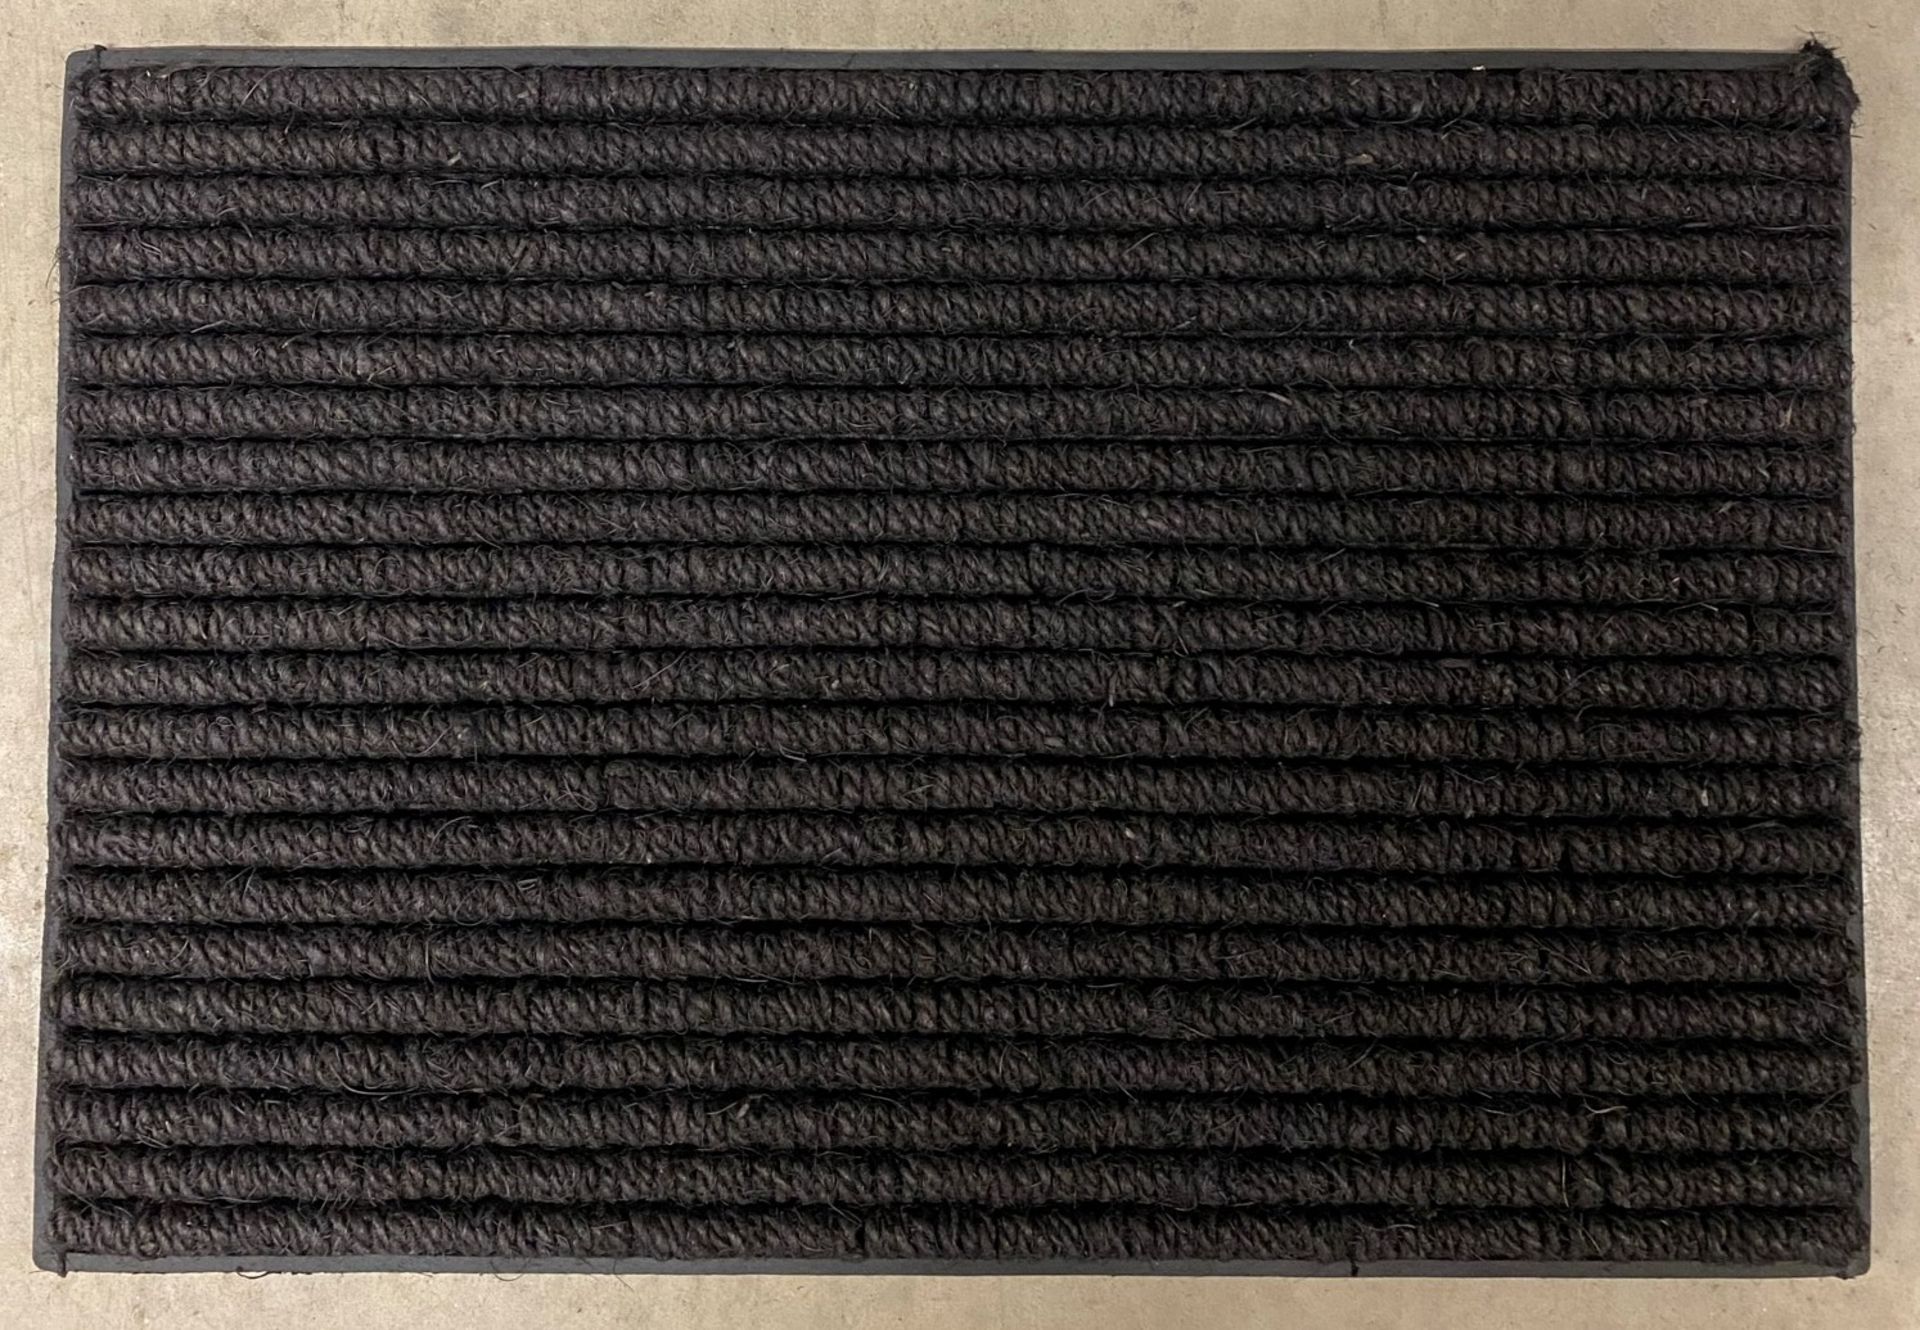 15 x Heavy Duty Looped Rubber Backed Doormats - 60cm x 40cm